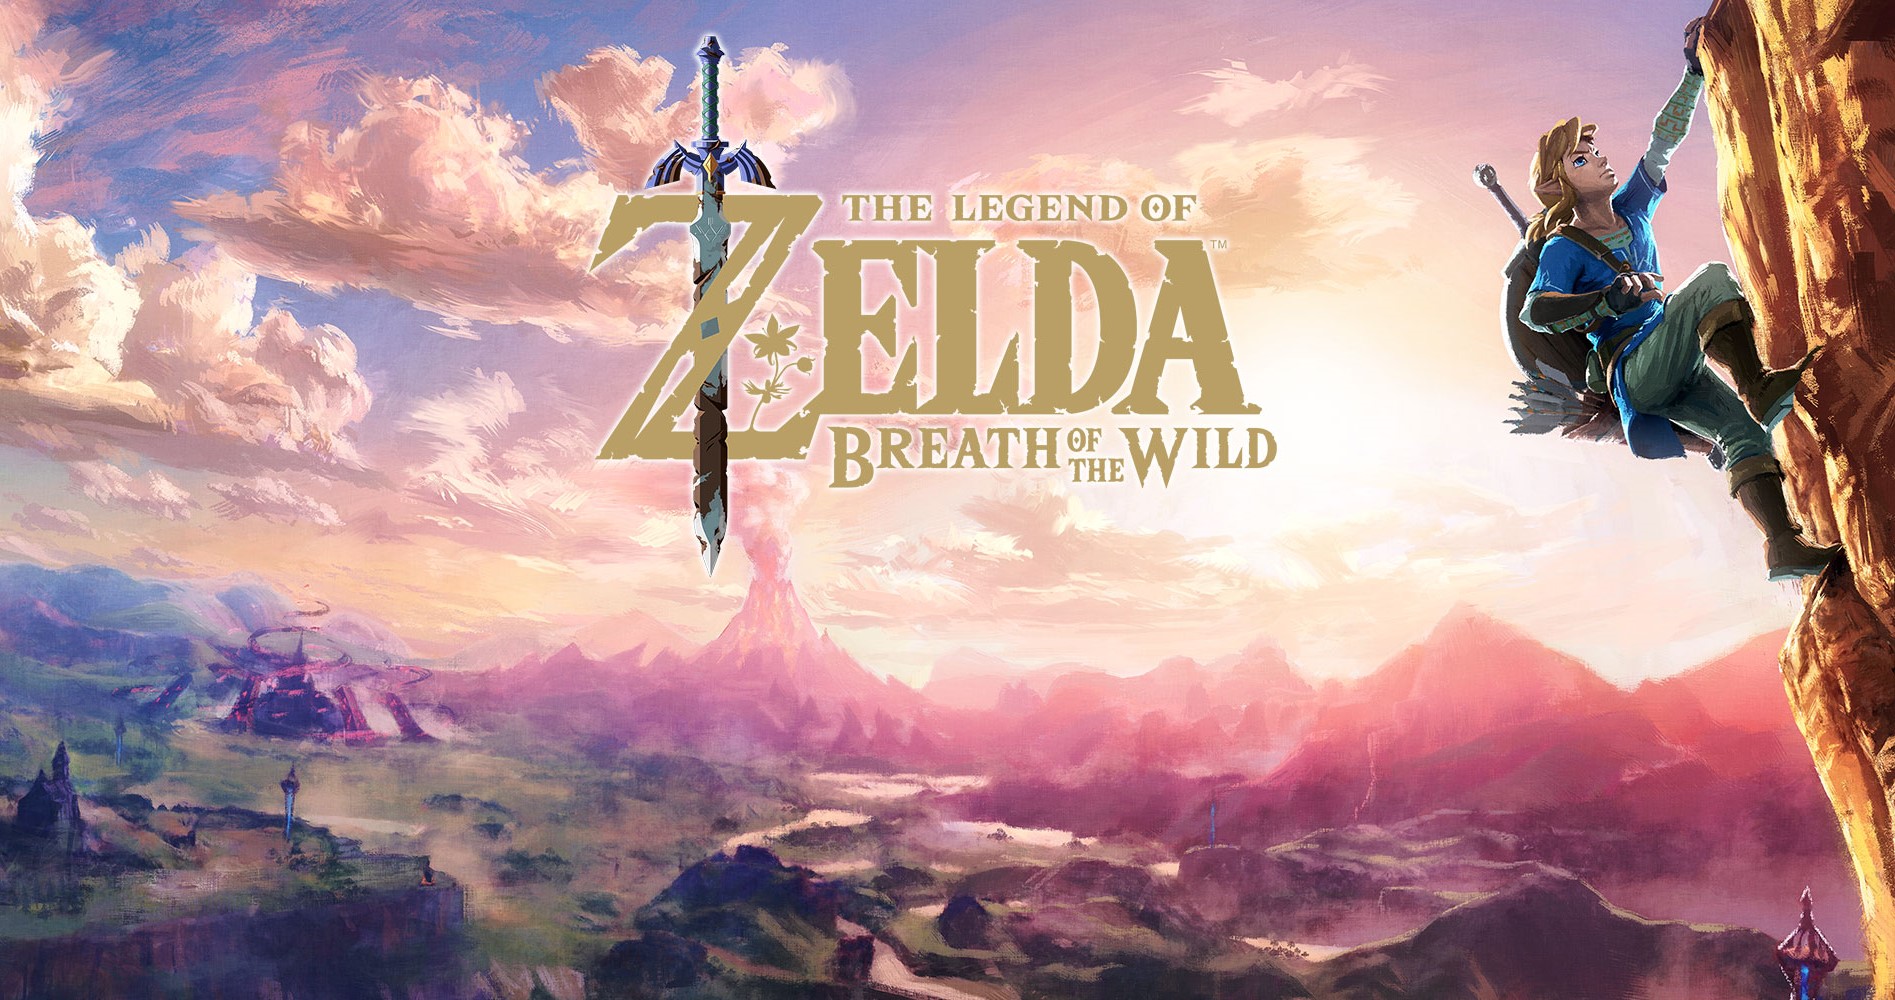 Il sequel di The Legend of Zelda: Breath of the Wild è ufficialmente in sviluppo!